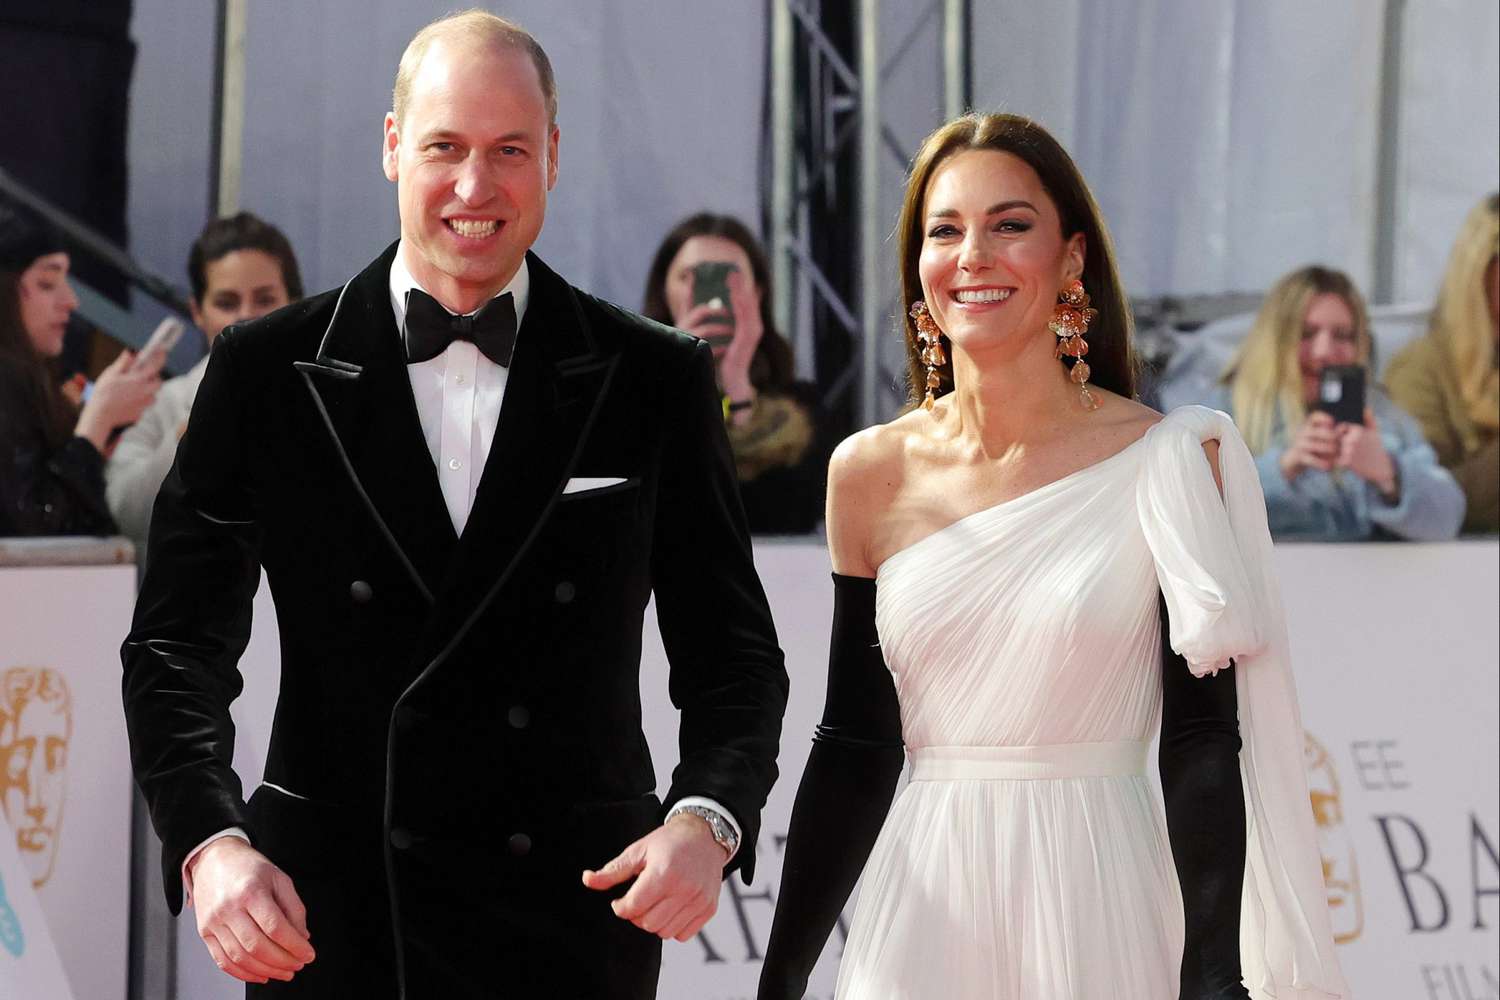 El gesto viral de Kate Middleton con el príncipe William que rompe todo protocolo real – El Profe Show